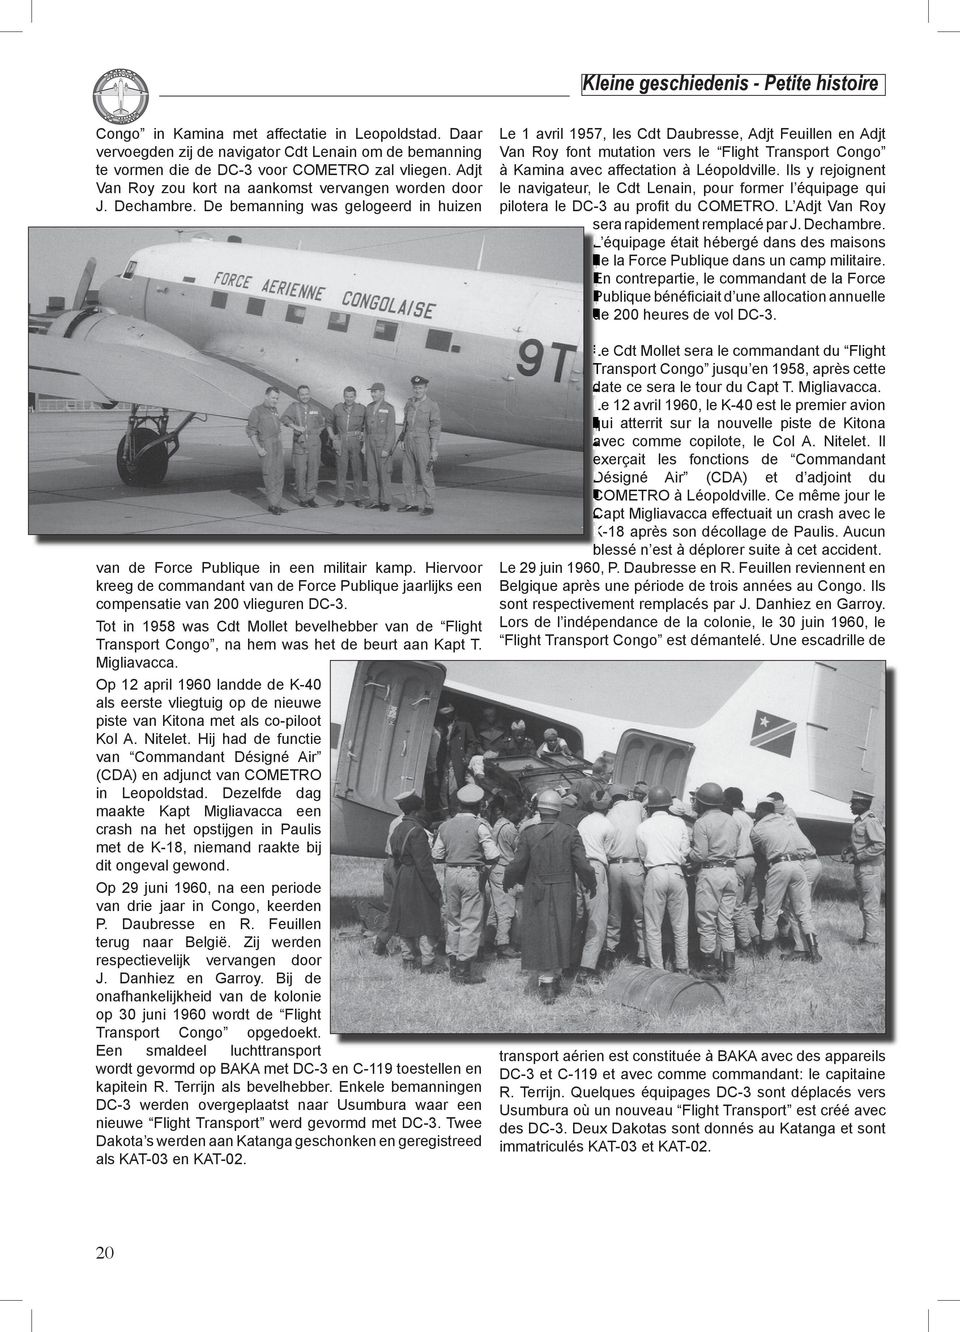 Hiervoor kreeg de commandant van de Force Publique jaarlijks een compensatie van 200 vlieguren DC-3.